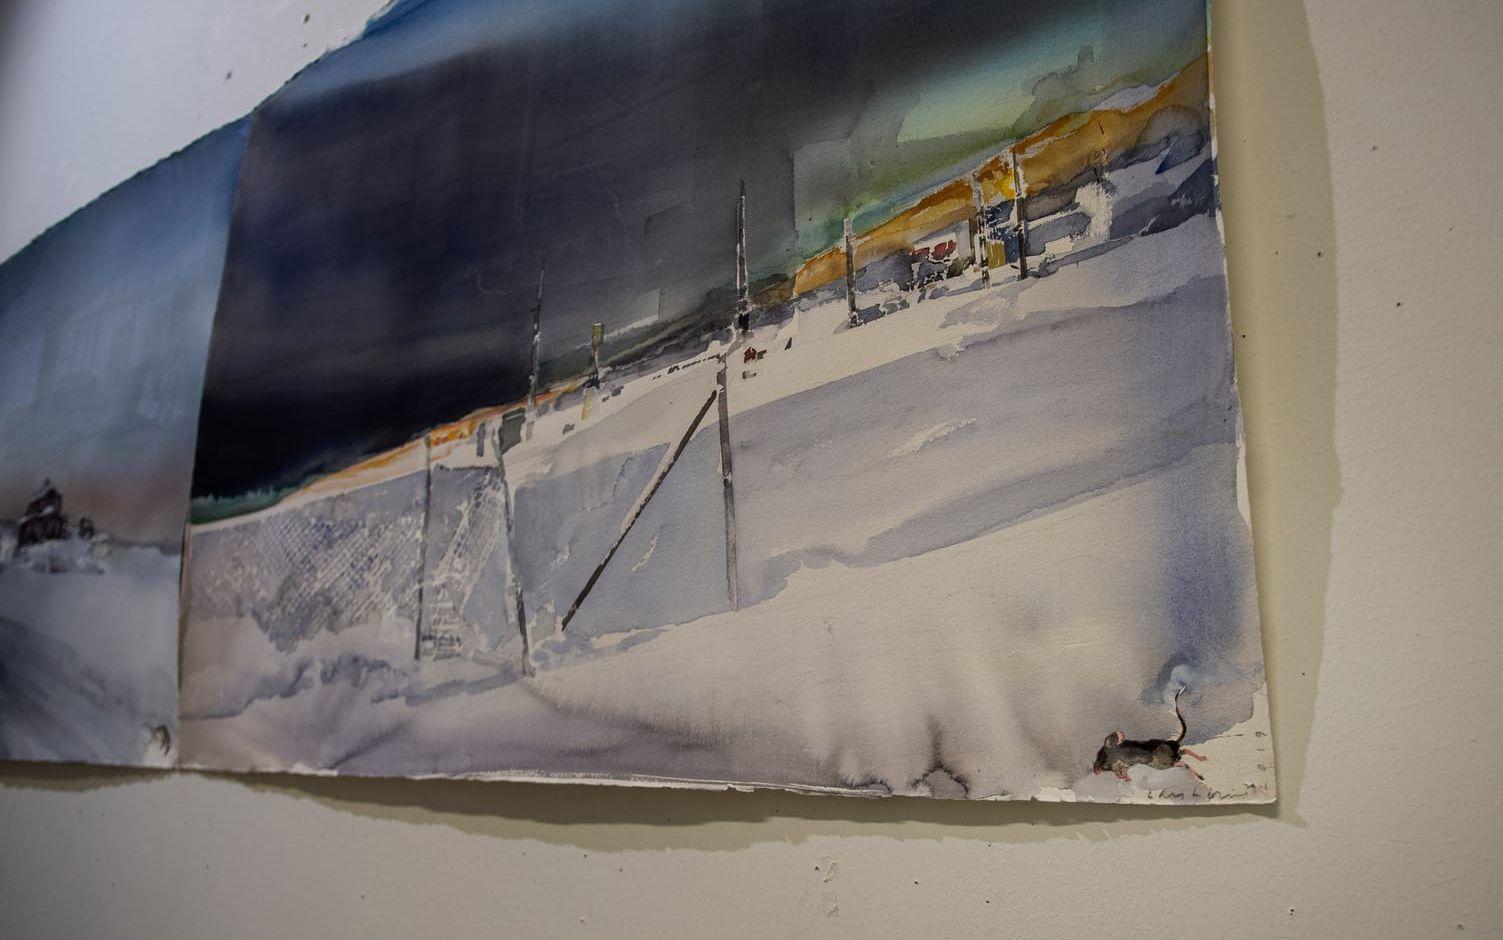 Akvarellmålningar från Lofoten. I Sandgrunds gamla kök med rejäla betongväggar hänger en serie av verk från Lofoten där han bodde i tolv år. Här har han fångat känslan och ljuset med motiv på landskap, hus och hav på ett makalöst sätt.